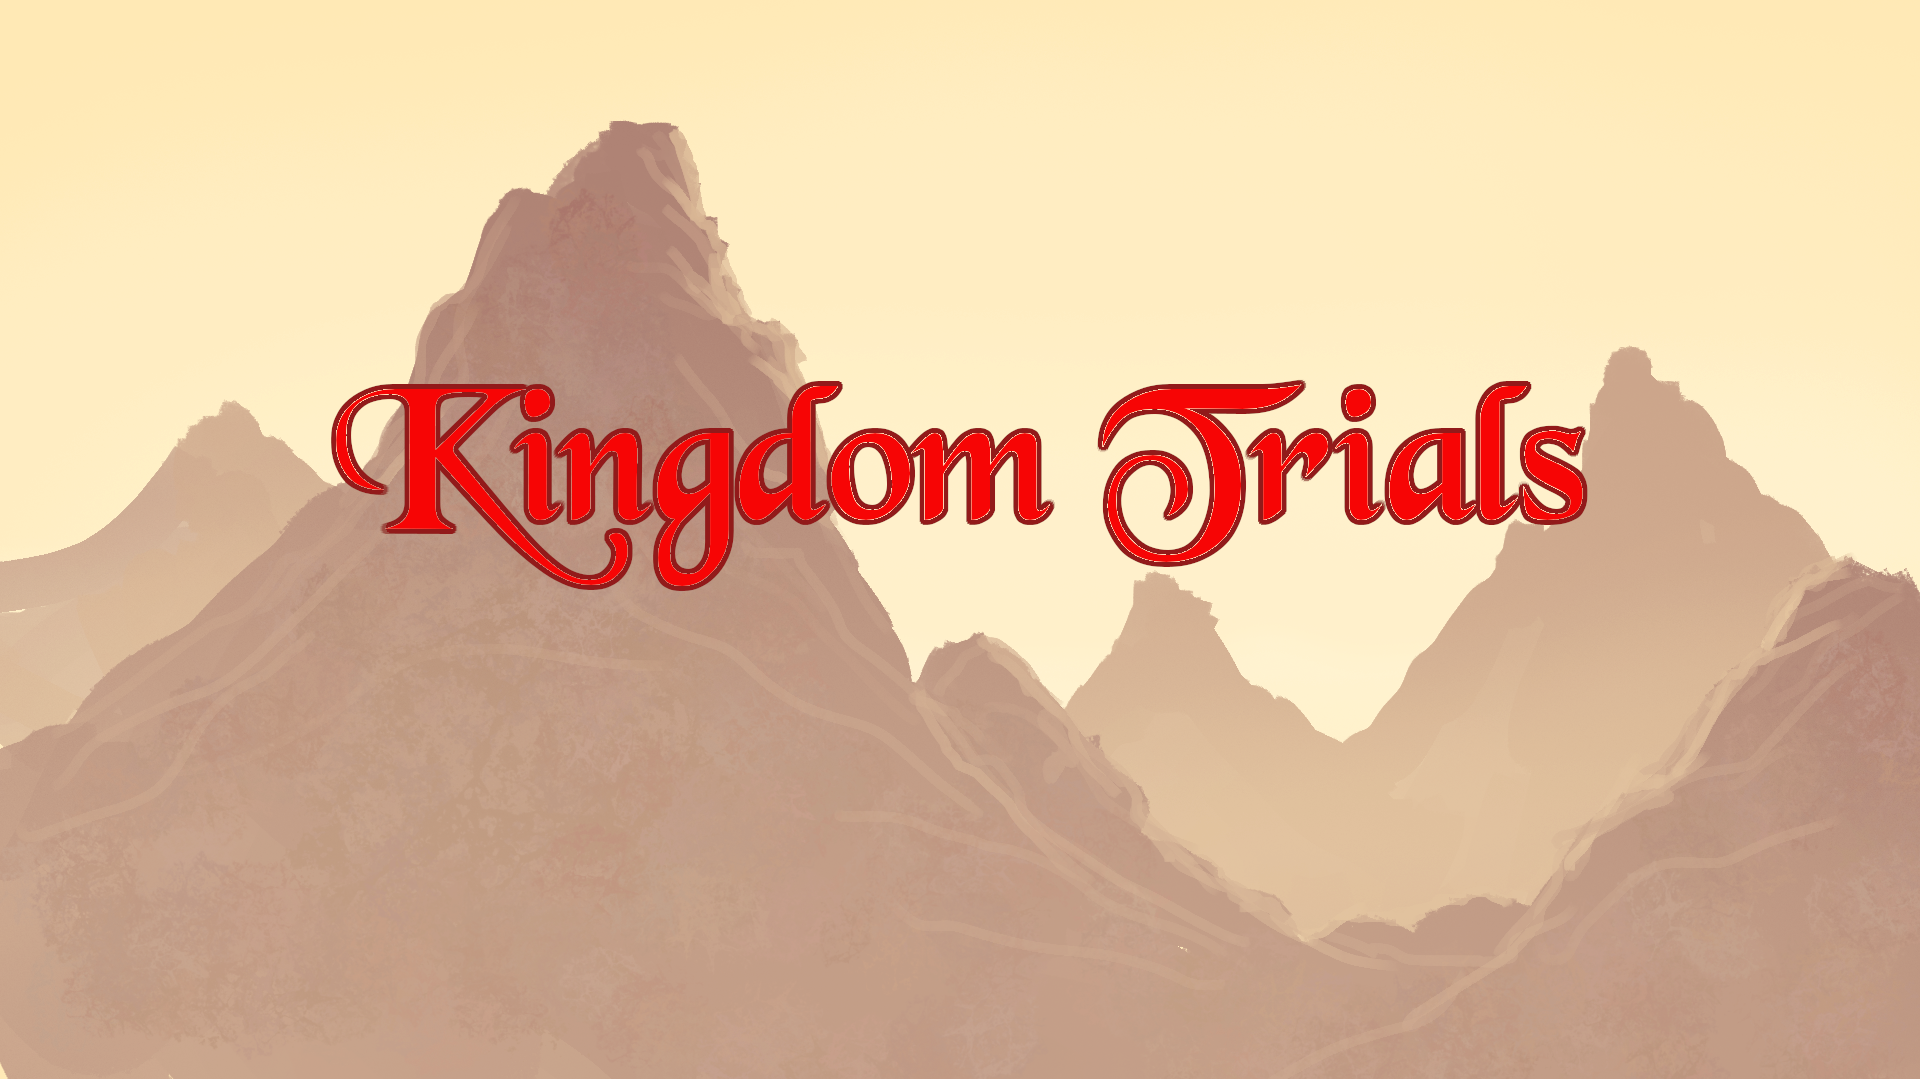 Kingdom Trials